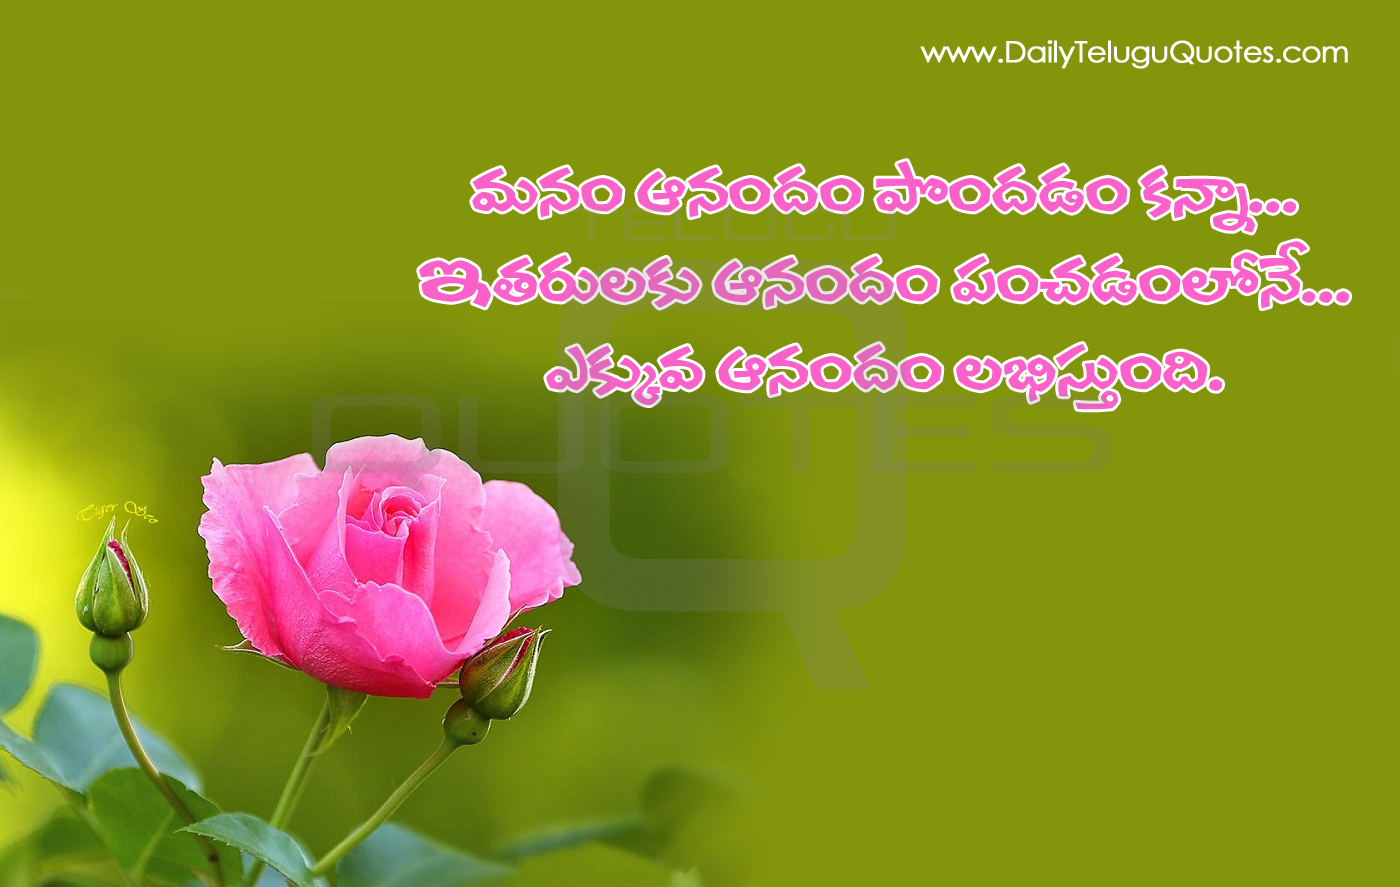 Telugu Manchi maatalu Nice Telugu Inspiring Life Quotations With Nice Awesome Telugu Motivational